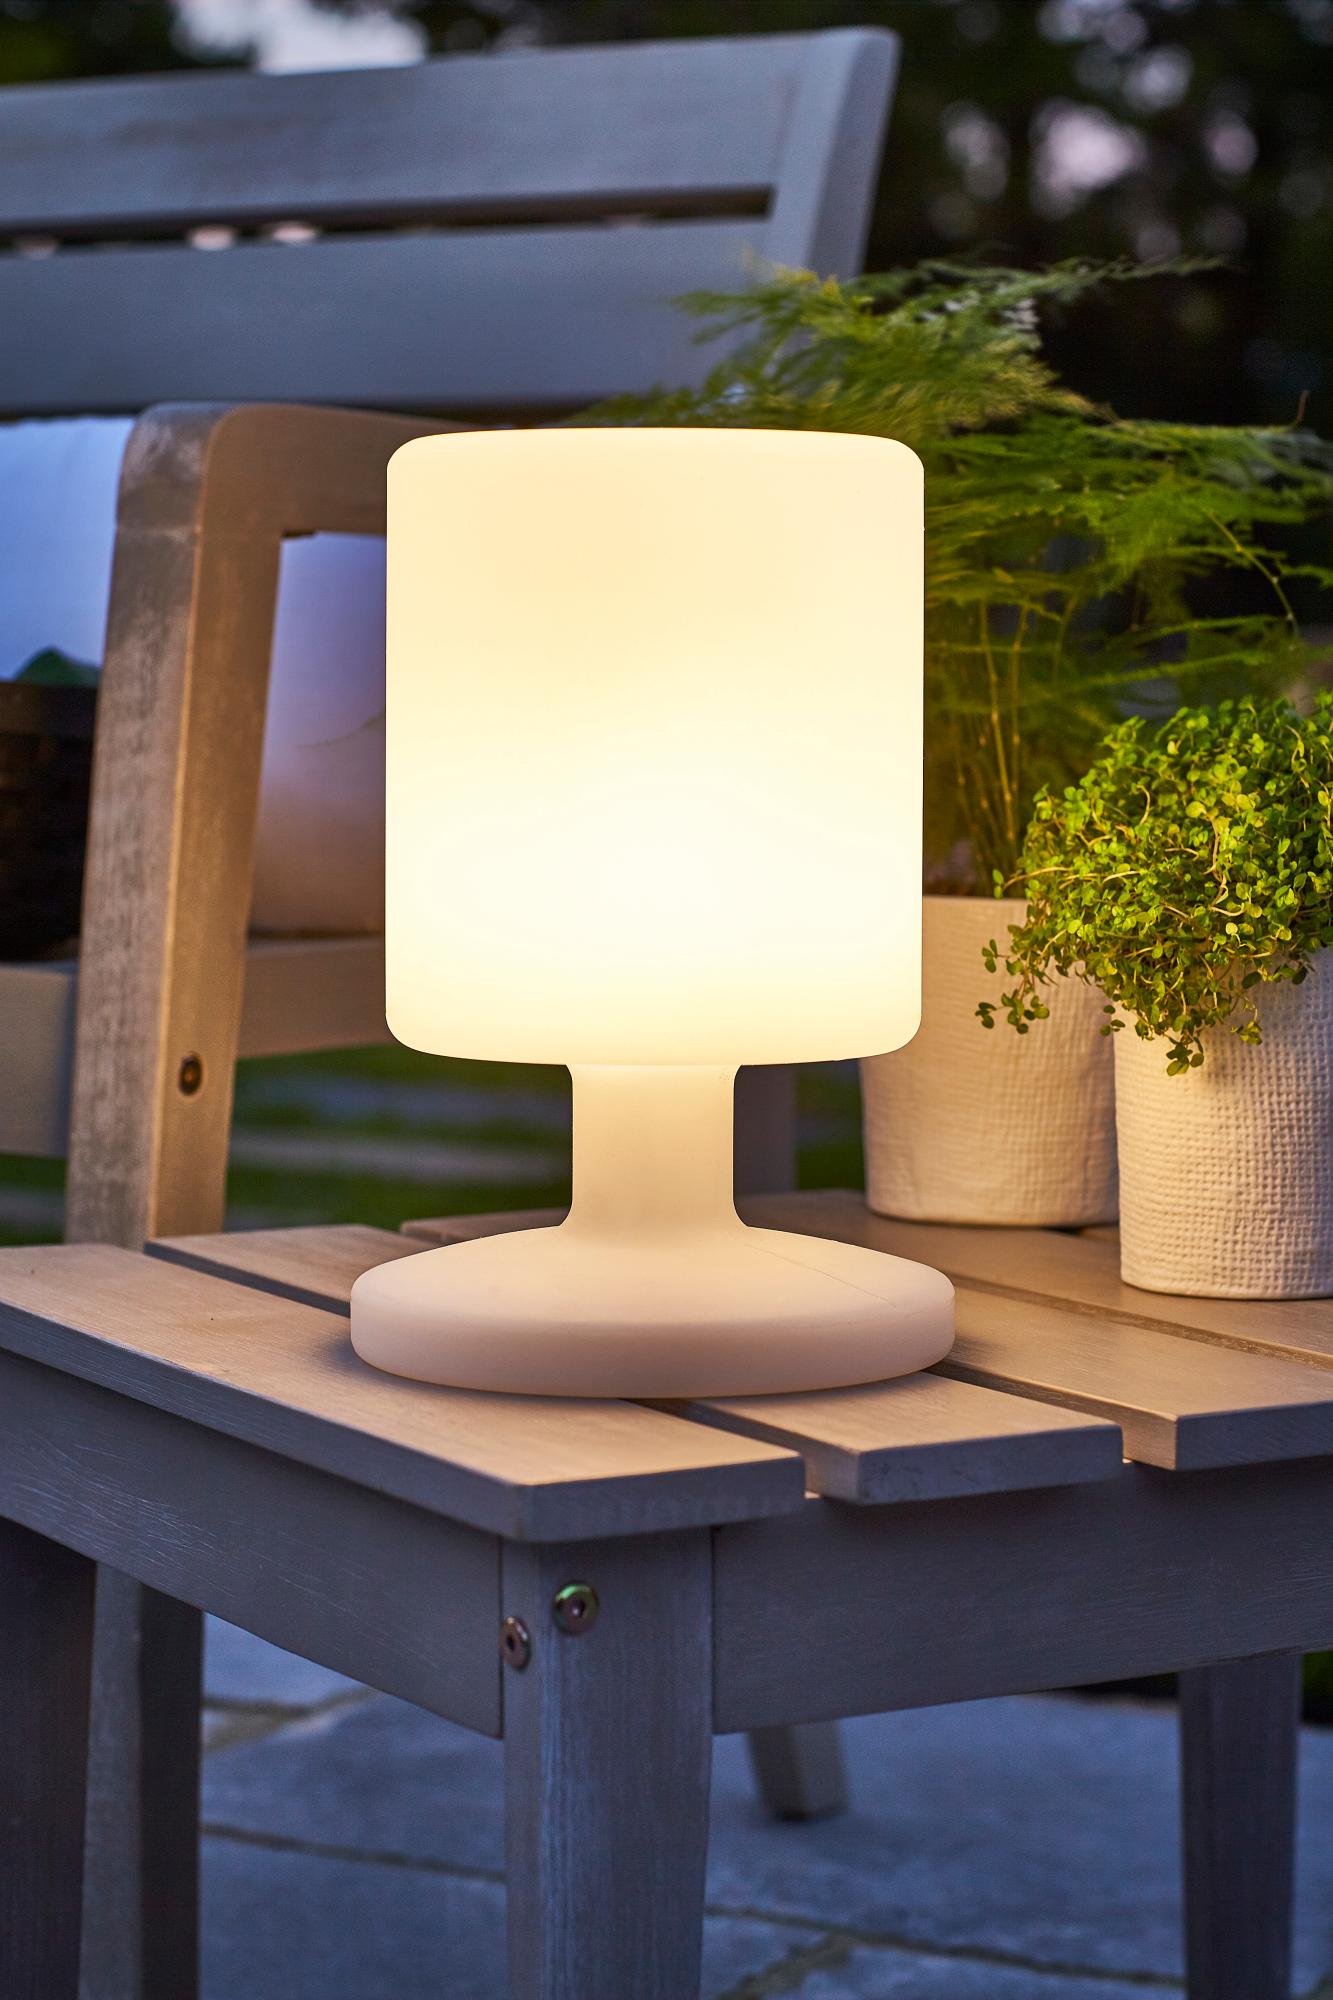 Holz Lampe de Table sans fil 8 couleurs Blanc chaud Dimmable Lampe Table exterieur Rechargeable IP44 étanche Décoration idéale pour votre maison et votre jardin Table à manger d'hôtel 